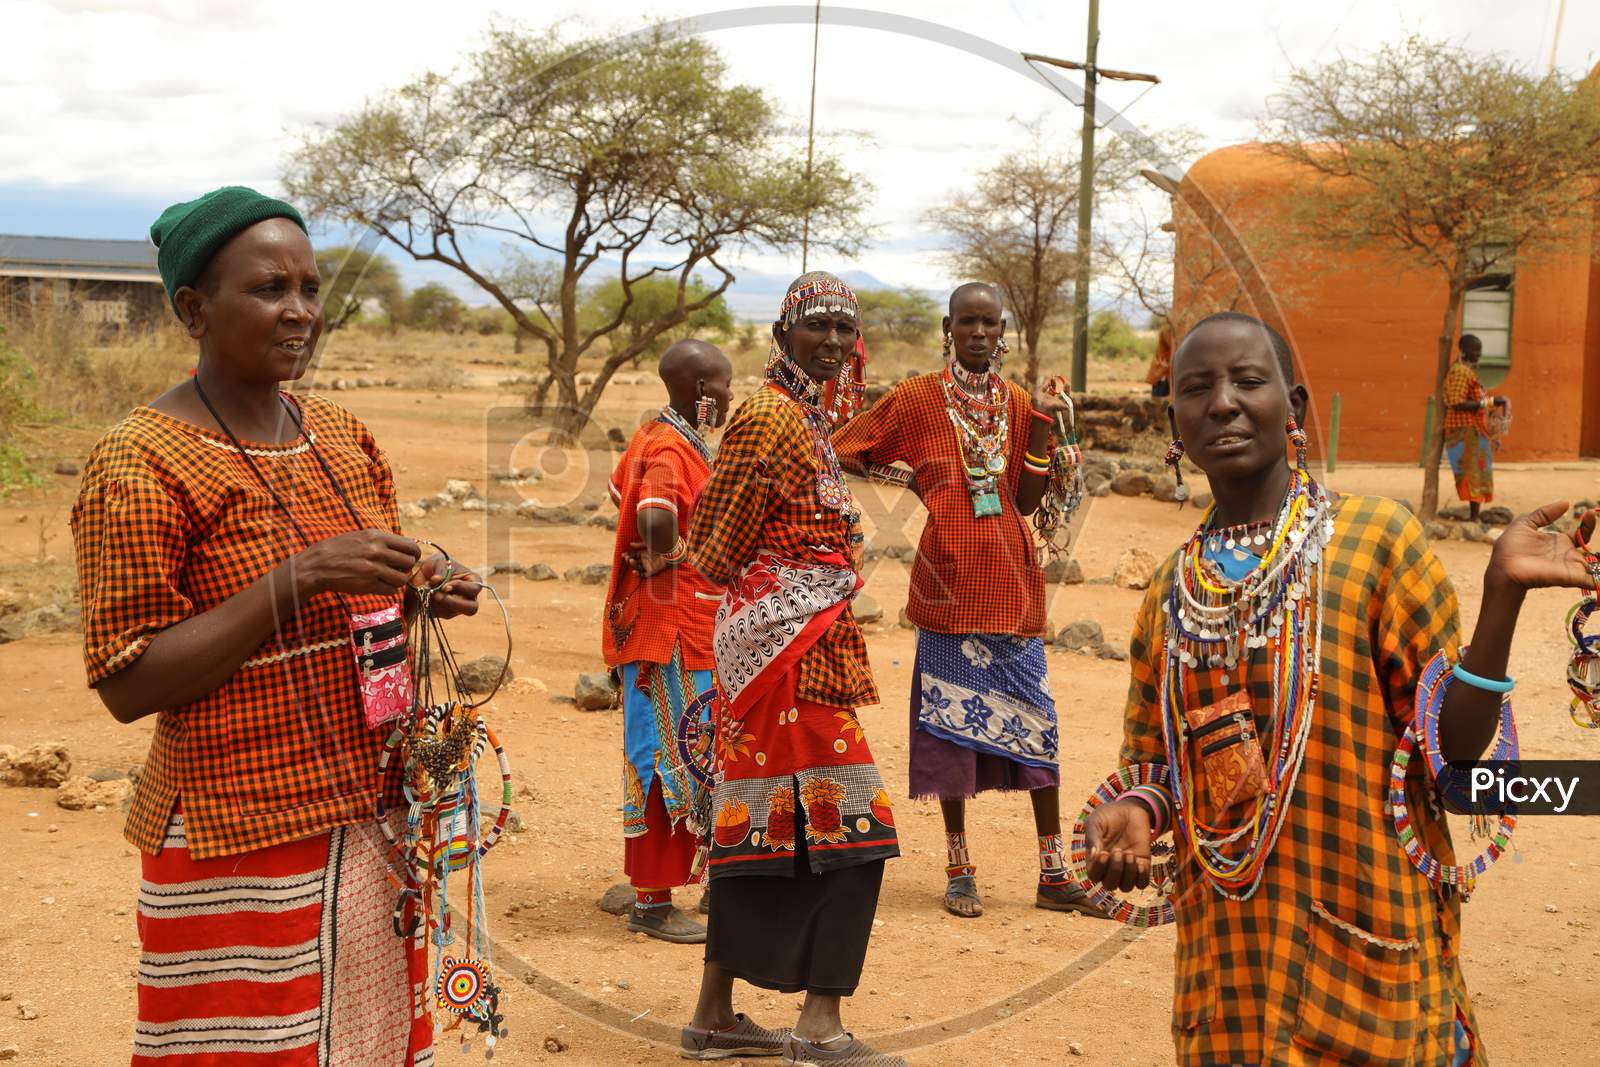 Rural people of Kenya